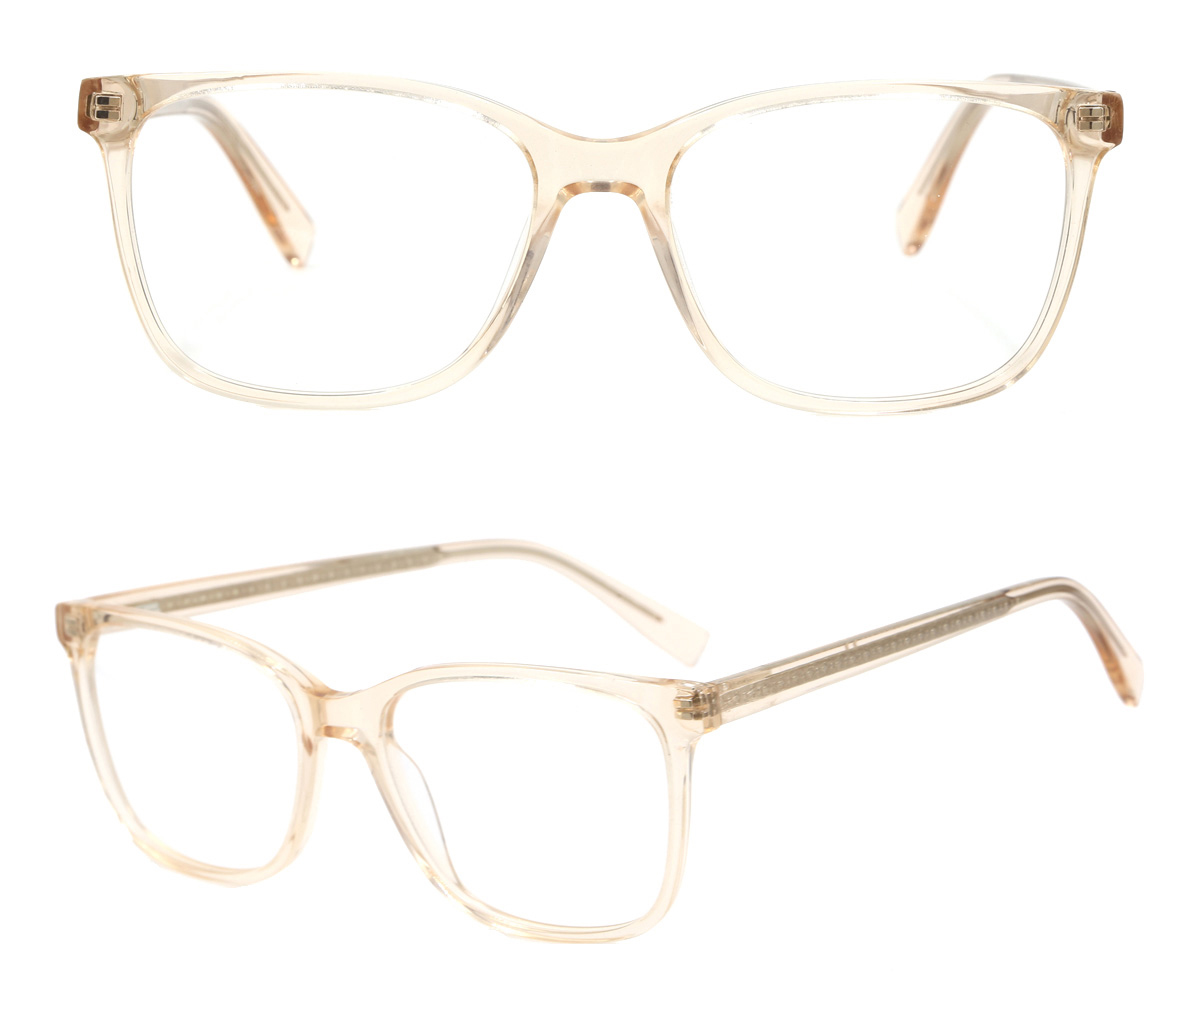 Clear Acetate Glasses Frames Wholesale,Transparent Optical Frames Manufacturer